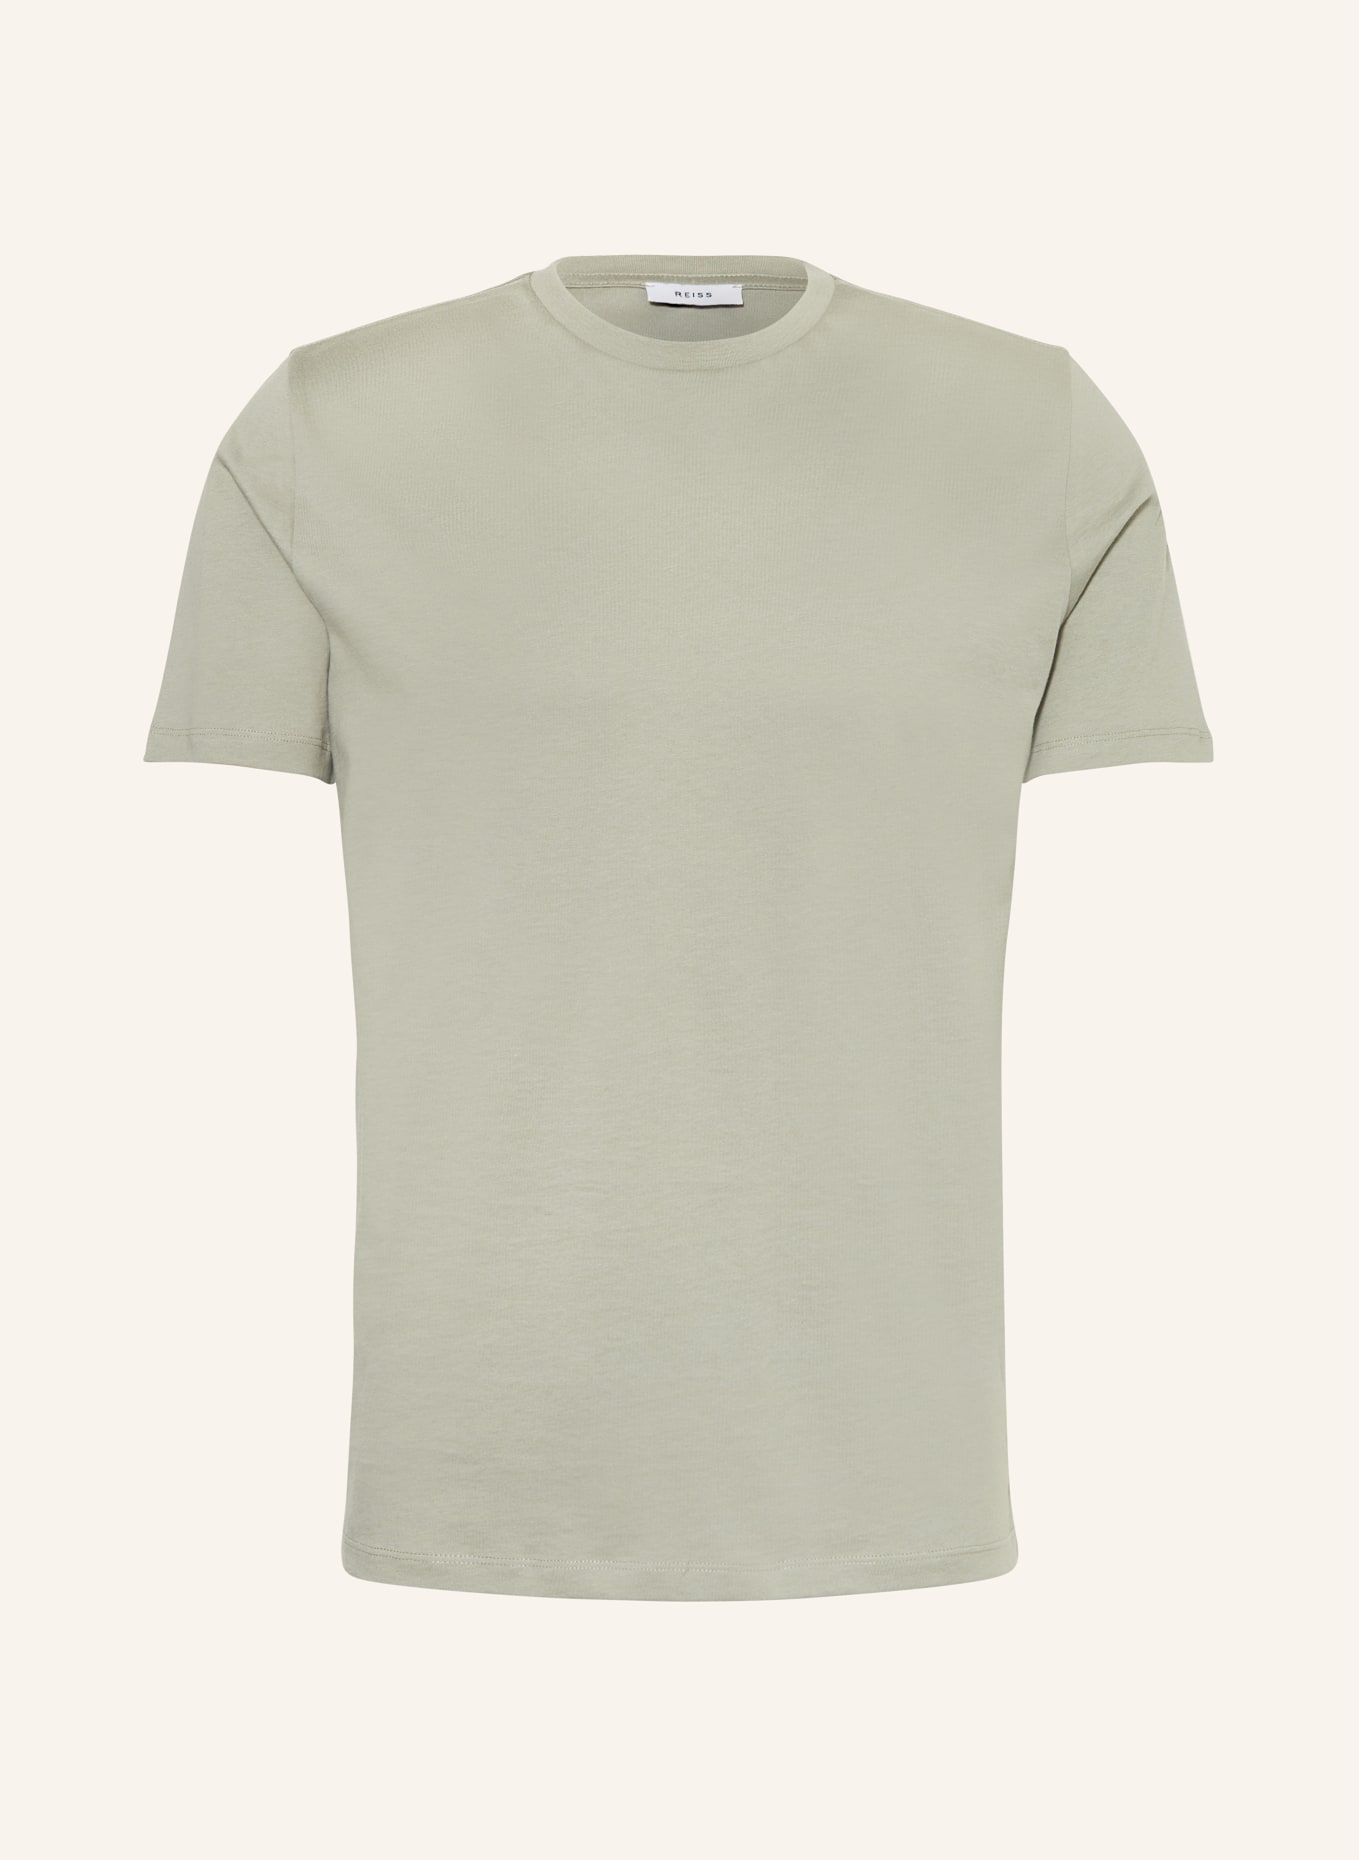 REISS T-Shirt BLESS, Farbe: HELLGRÜN (Bild 1)